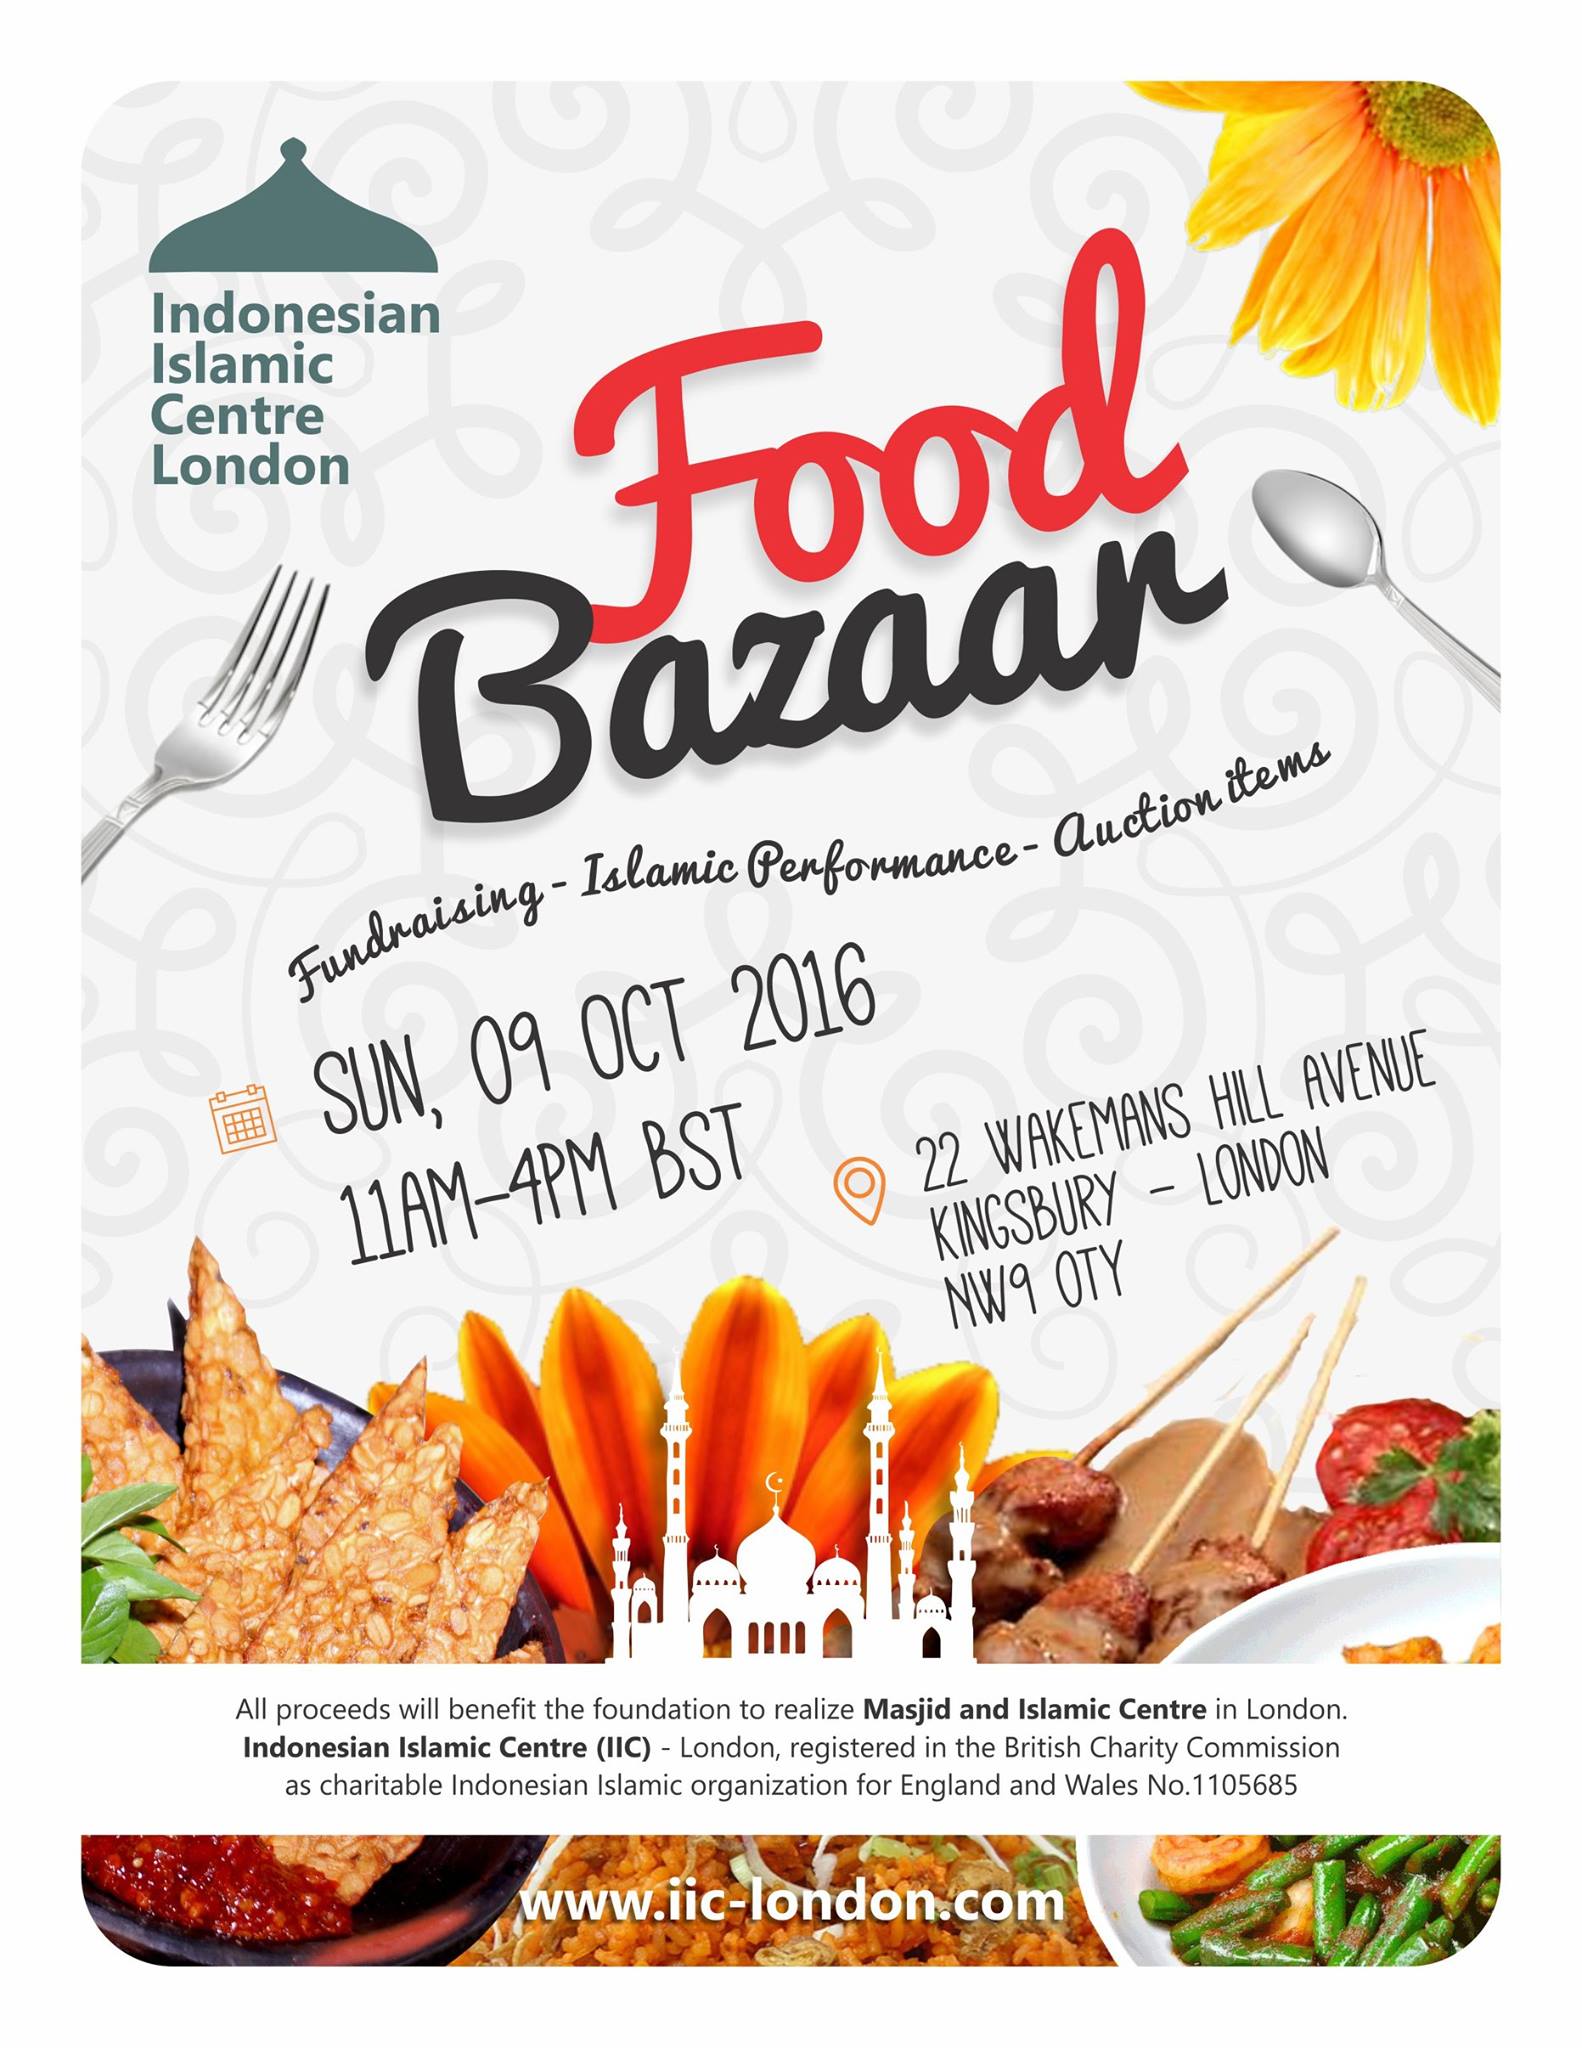 Bazaar IIC-London 9 October 2016